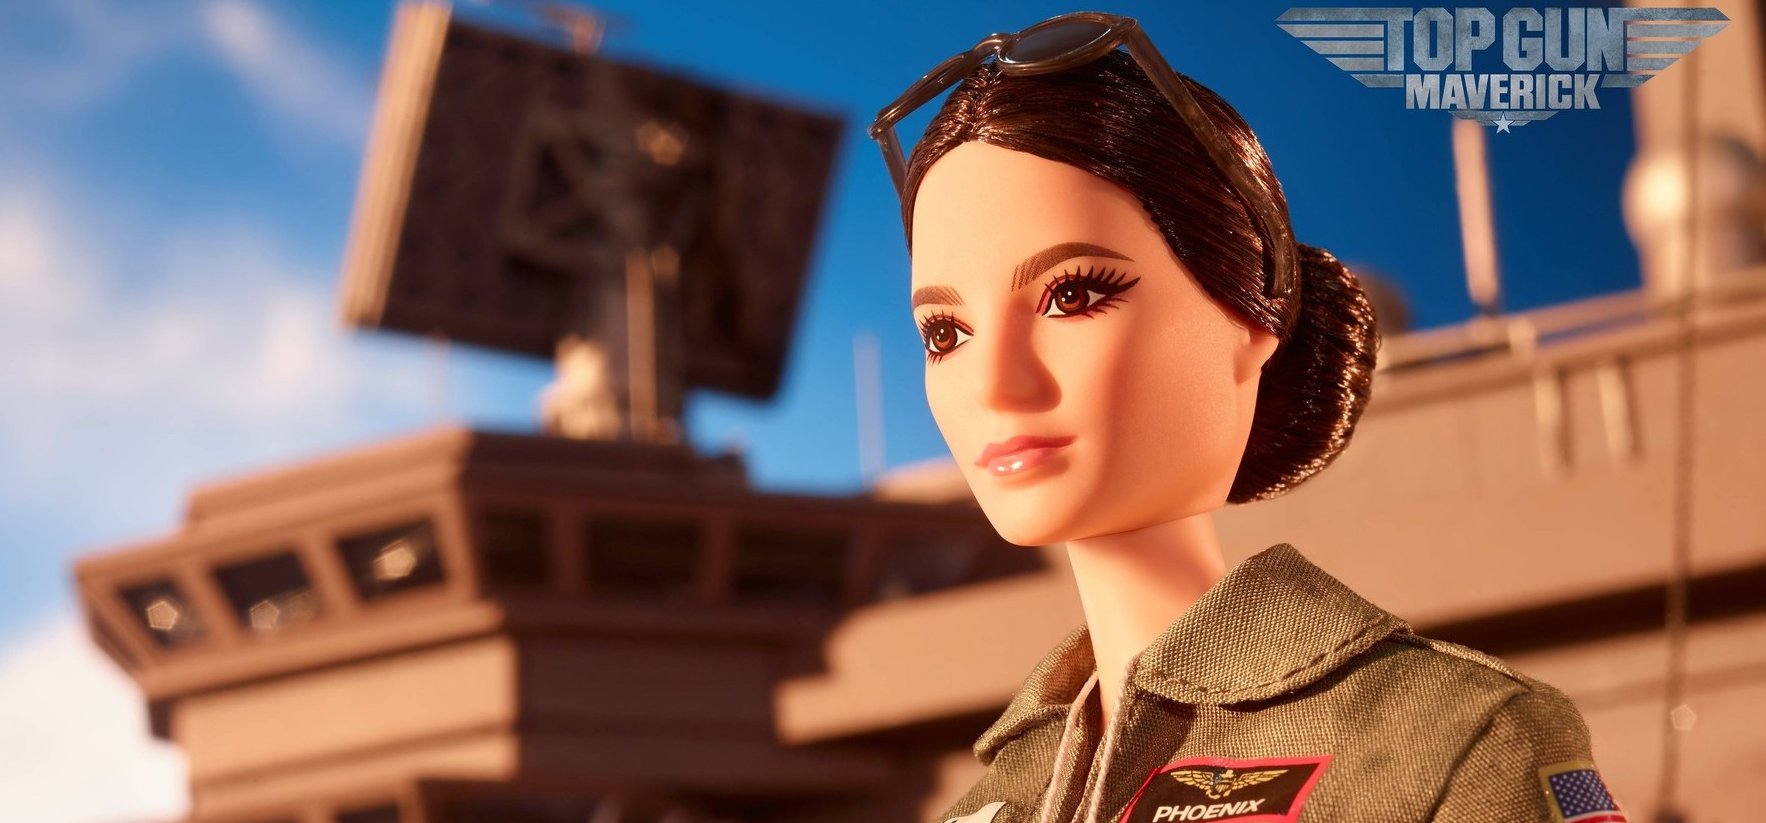 Ilyen se volt még: megérkezett a Top Gun Barbie baba – fotó